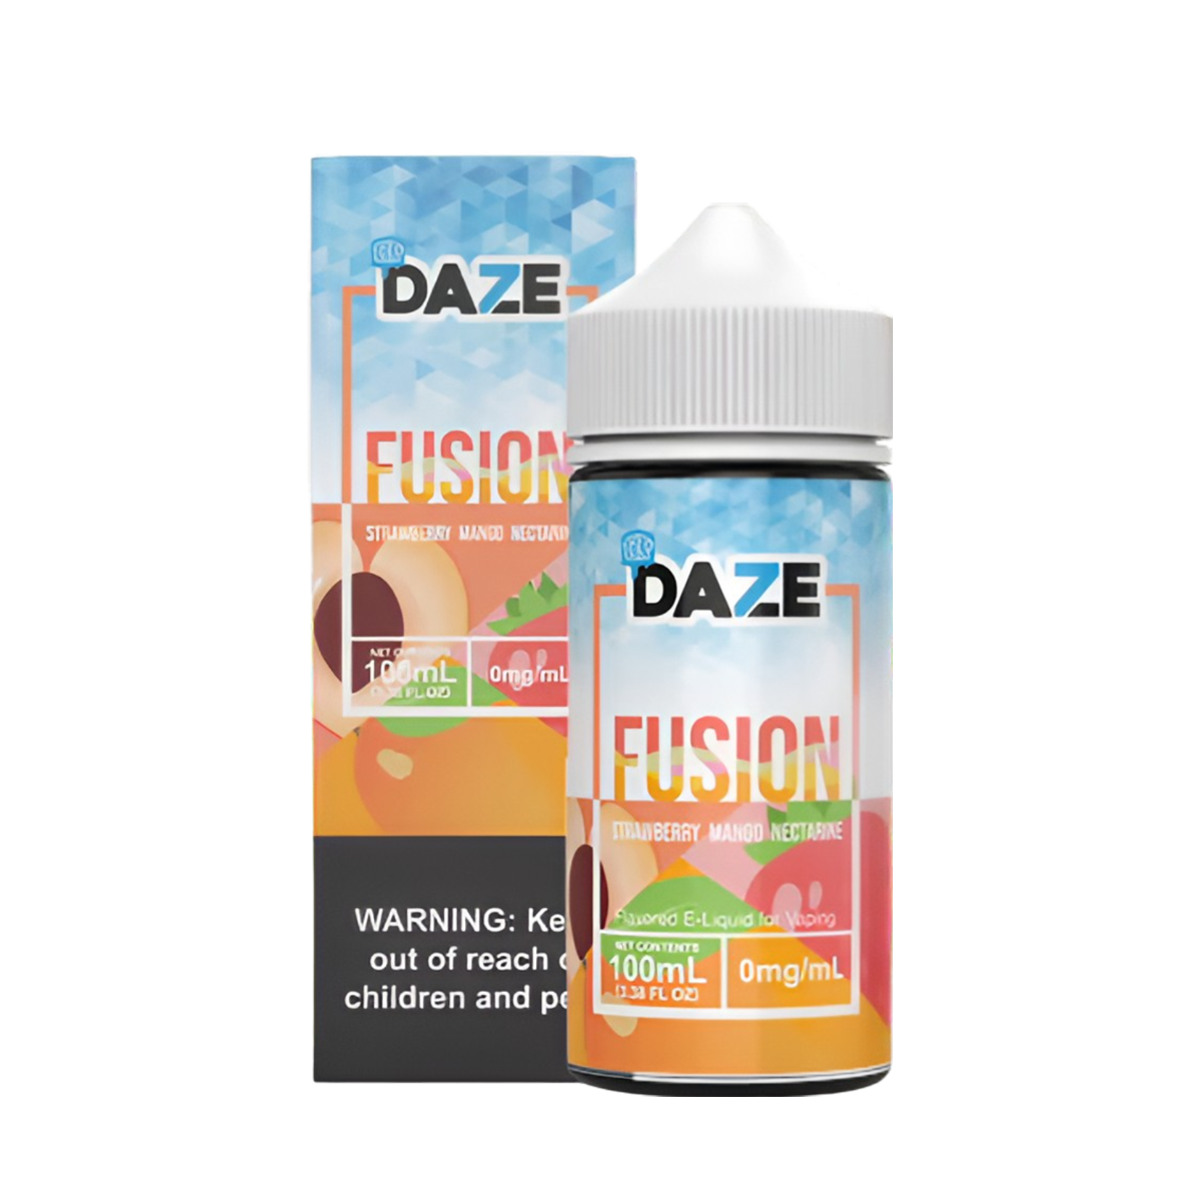 7 Daze Fusion Iced Freebase Vape Juice 0 Mg 100 ML Strawberry Mango Nectarine Iced